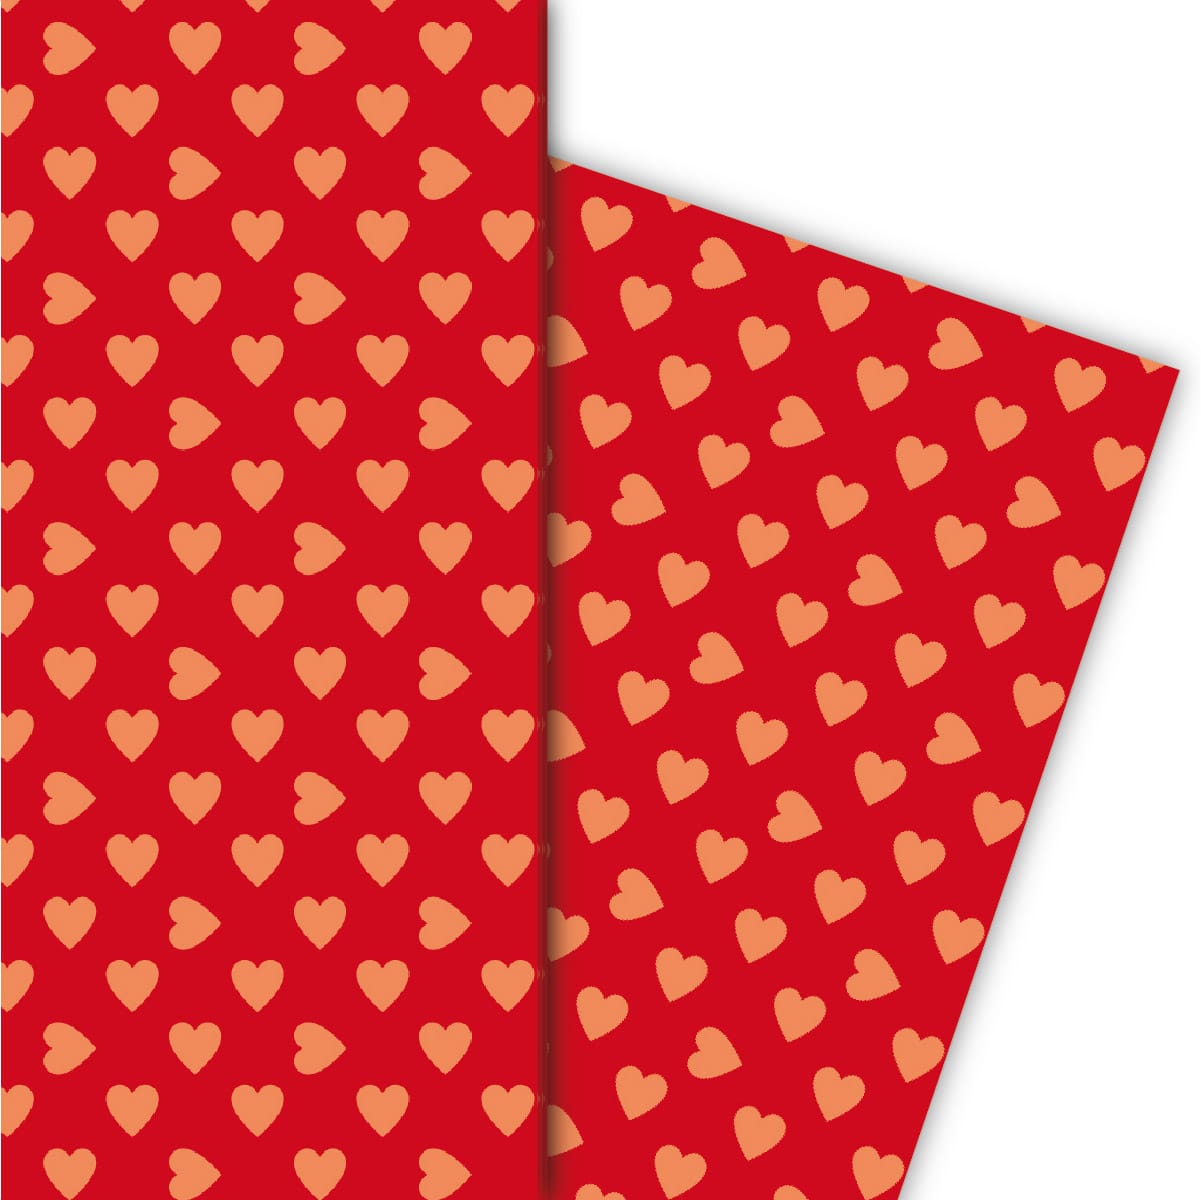 Kartenkaufrausch: Romantisches Geschenkpapier mit großen aus unserer Liebes Papeterie in orange